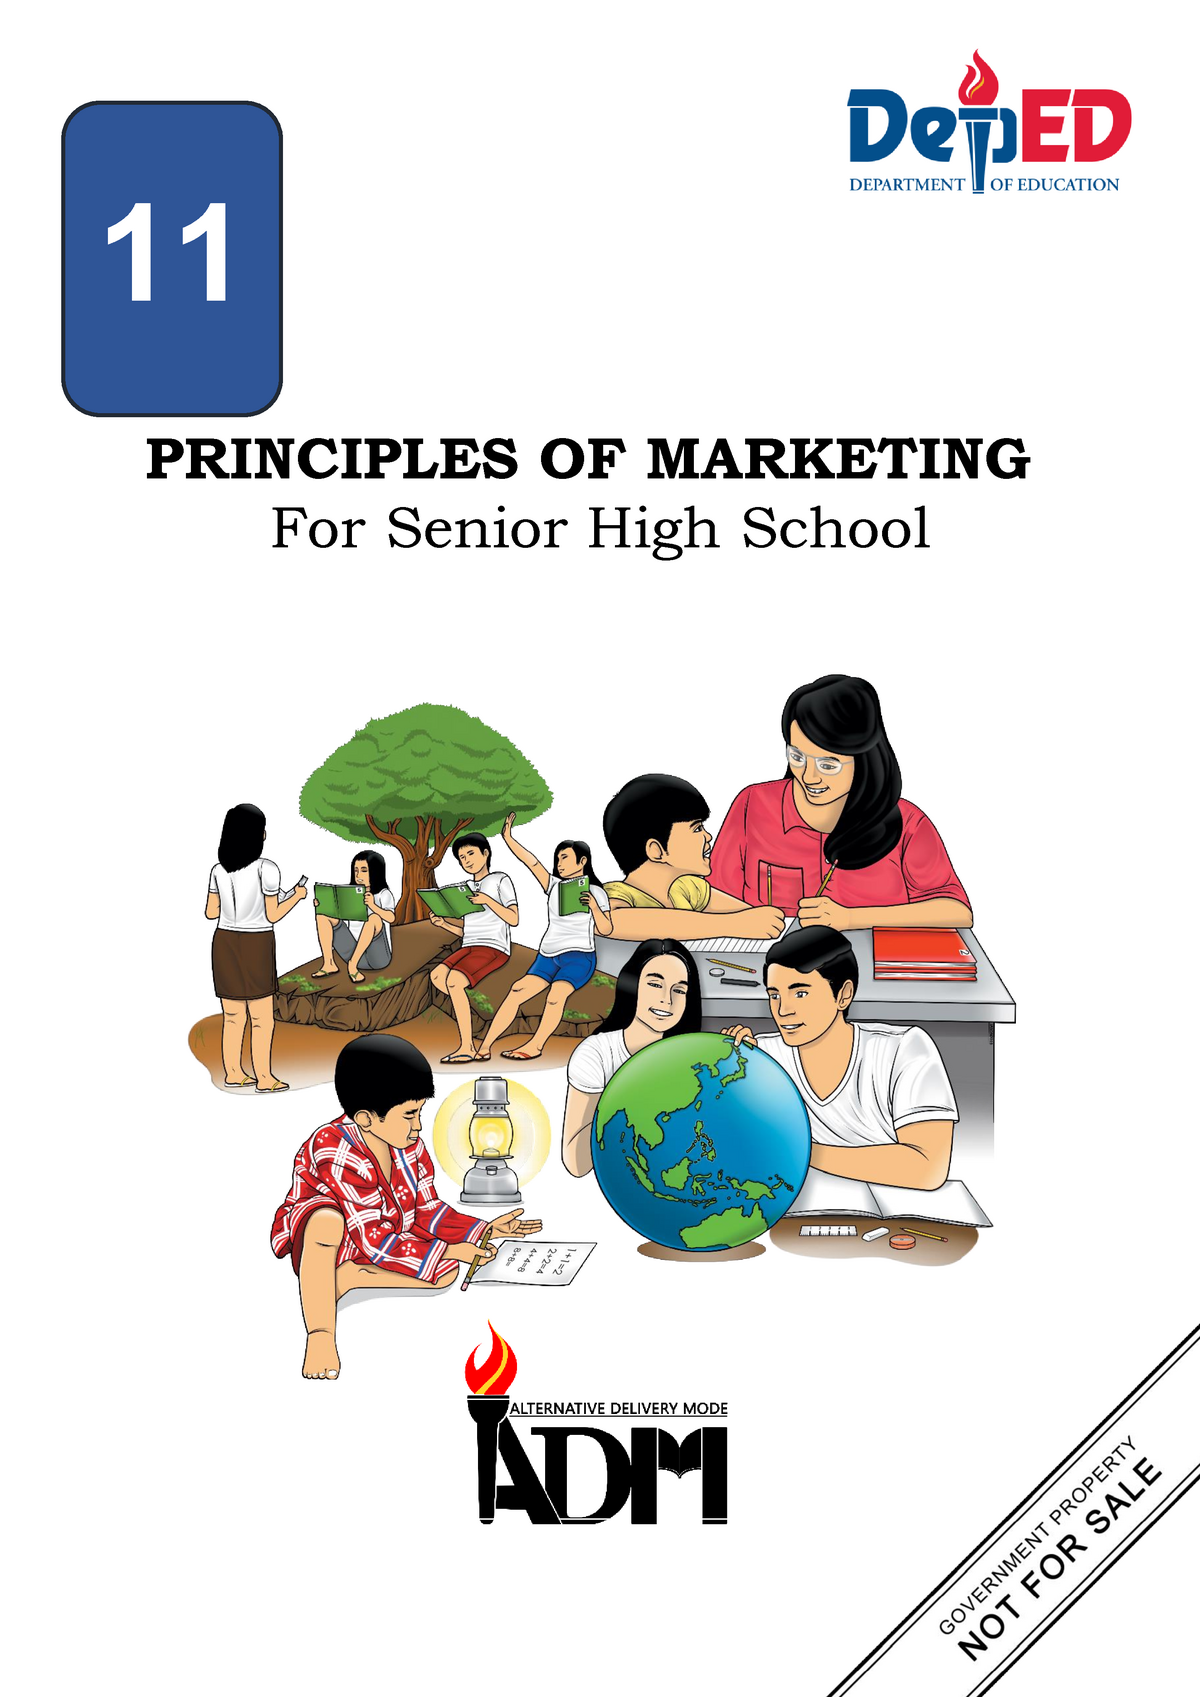 Principles of marketing - PRINCIPLES OF MARKETING For Senior High